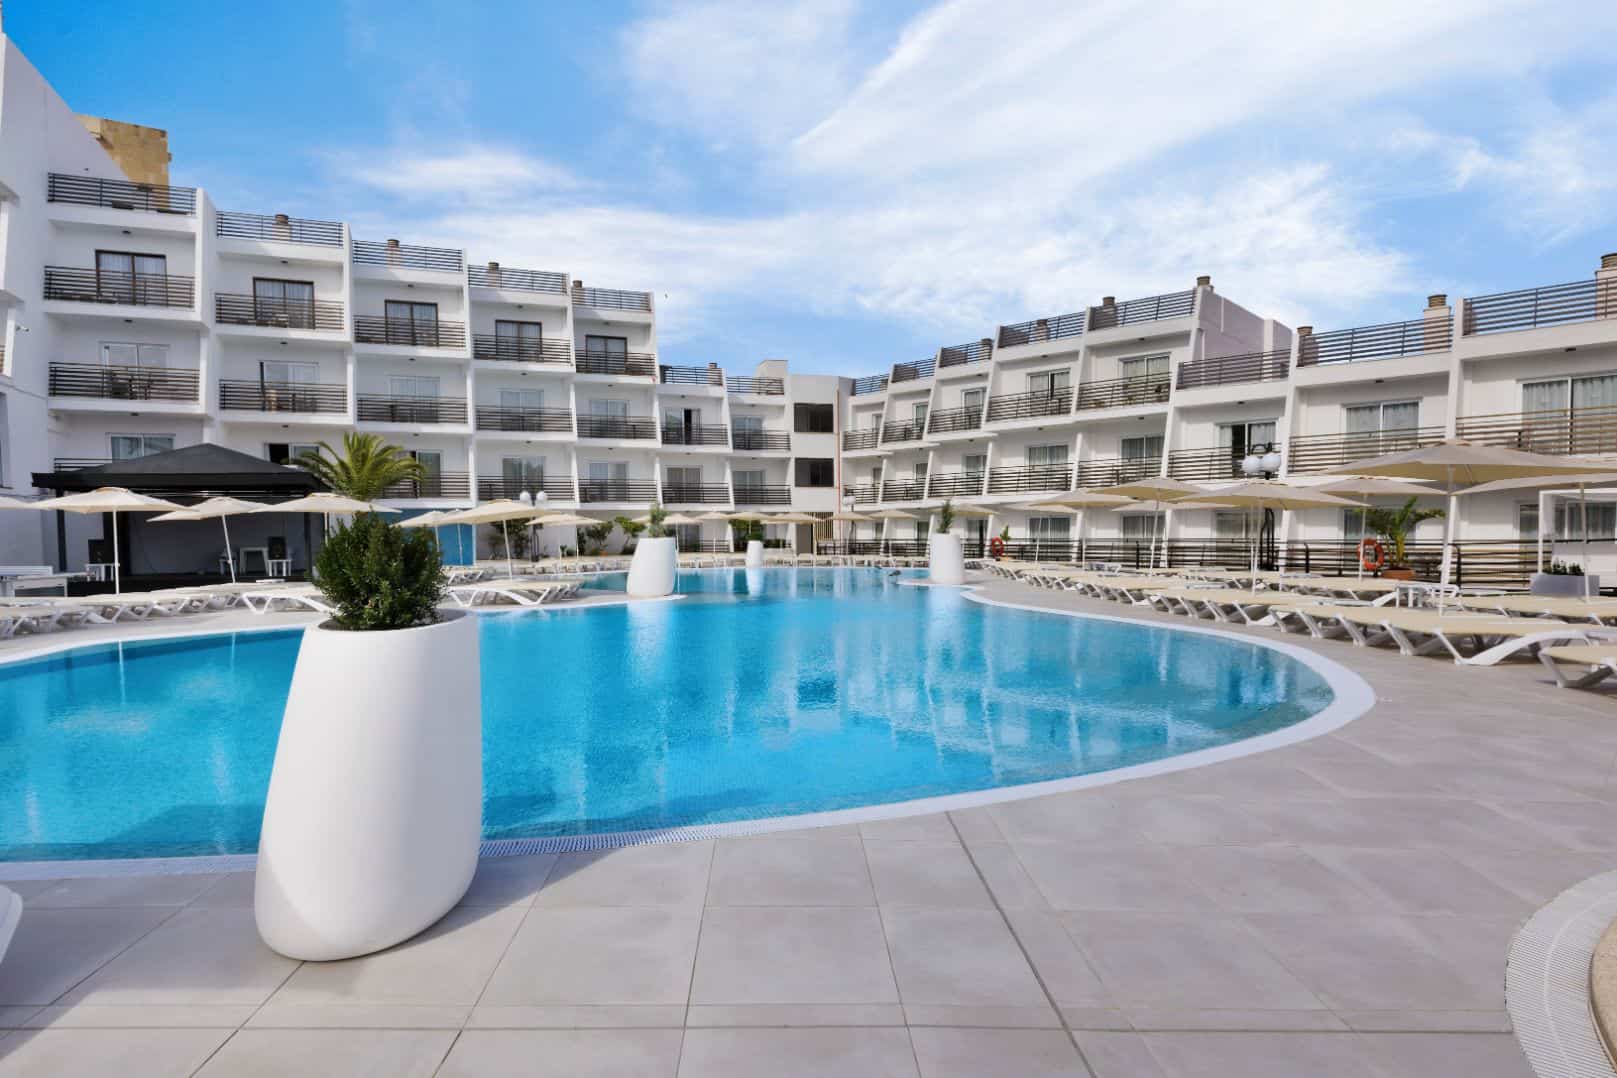 Oferta suite con todo incluido en Mallorca